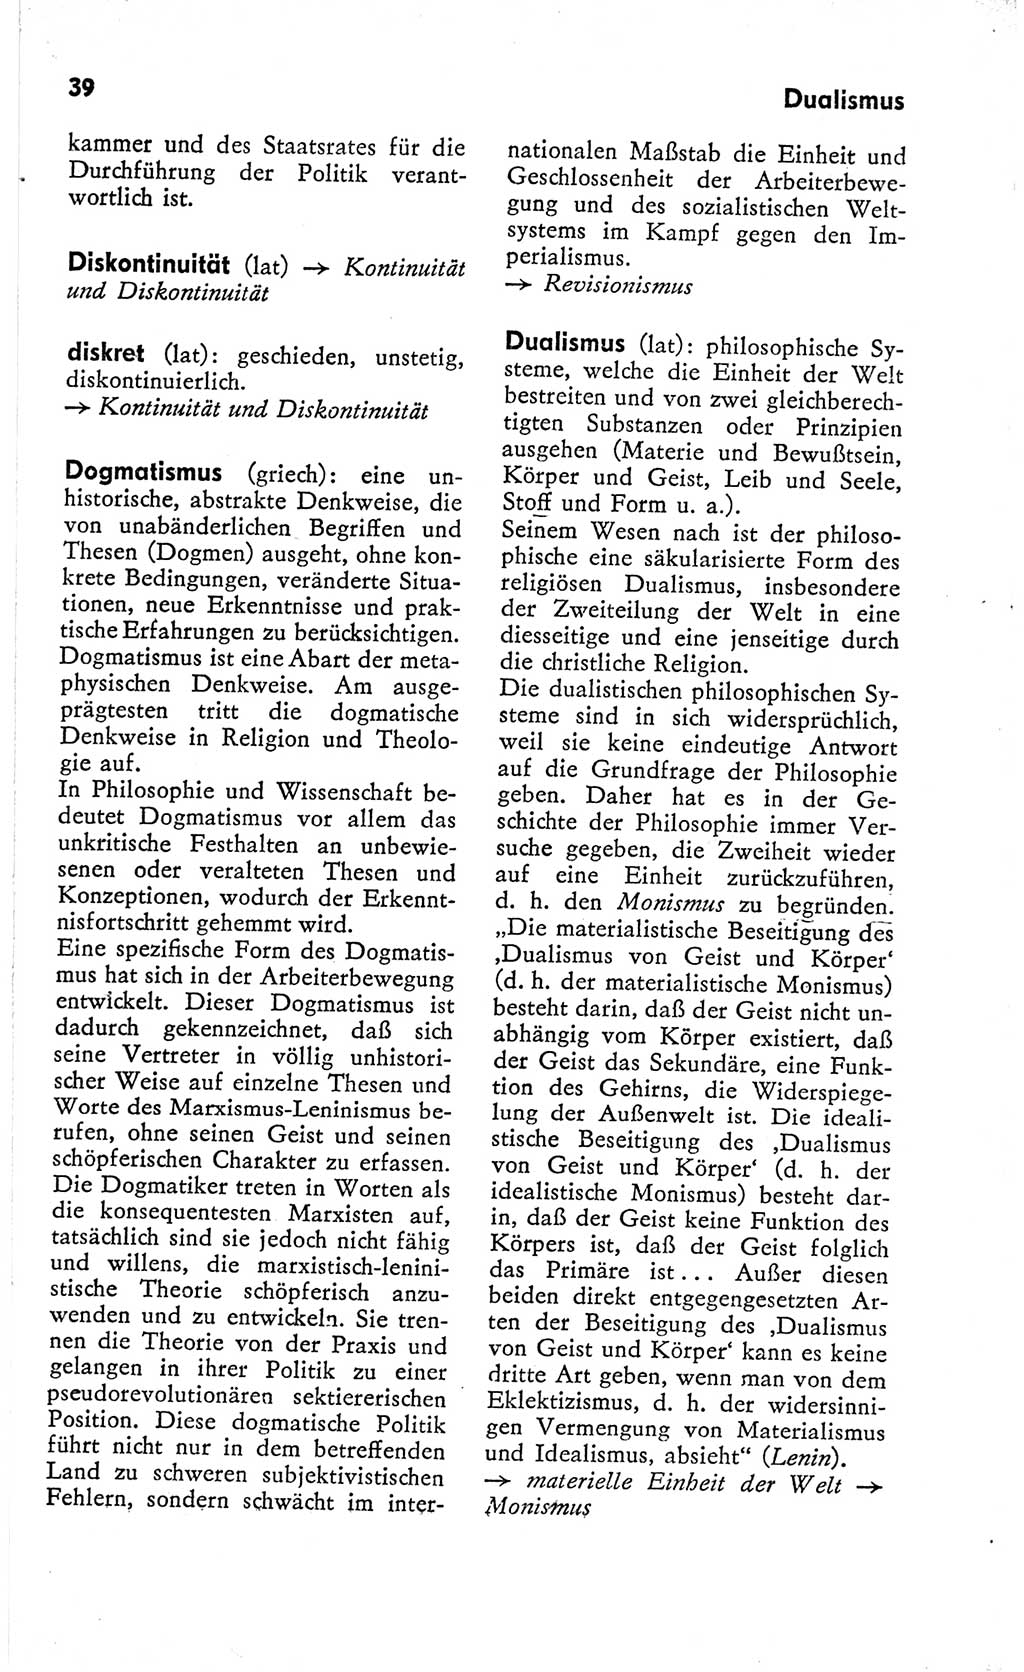 Kleines Wörterbuch der marxistisch-leninistischen Philosophie [Deutsche Demokratische Republik (DDR)] 1966, Seite 39 (Kl. Wb. ML Phil. DDR 1966, S. 39)